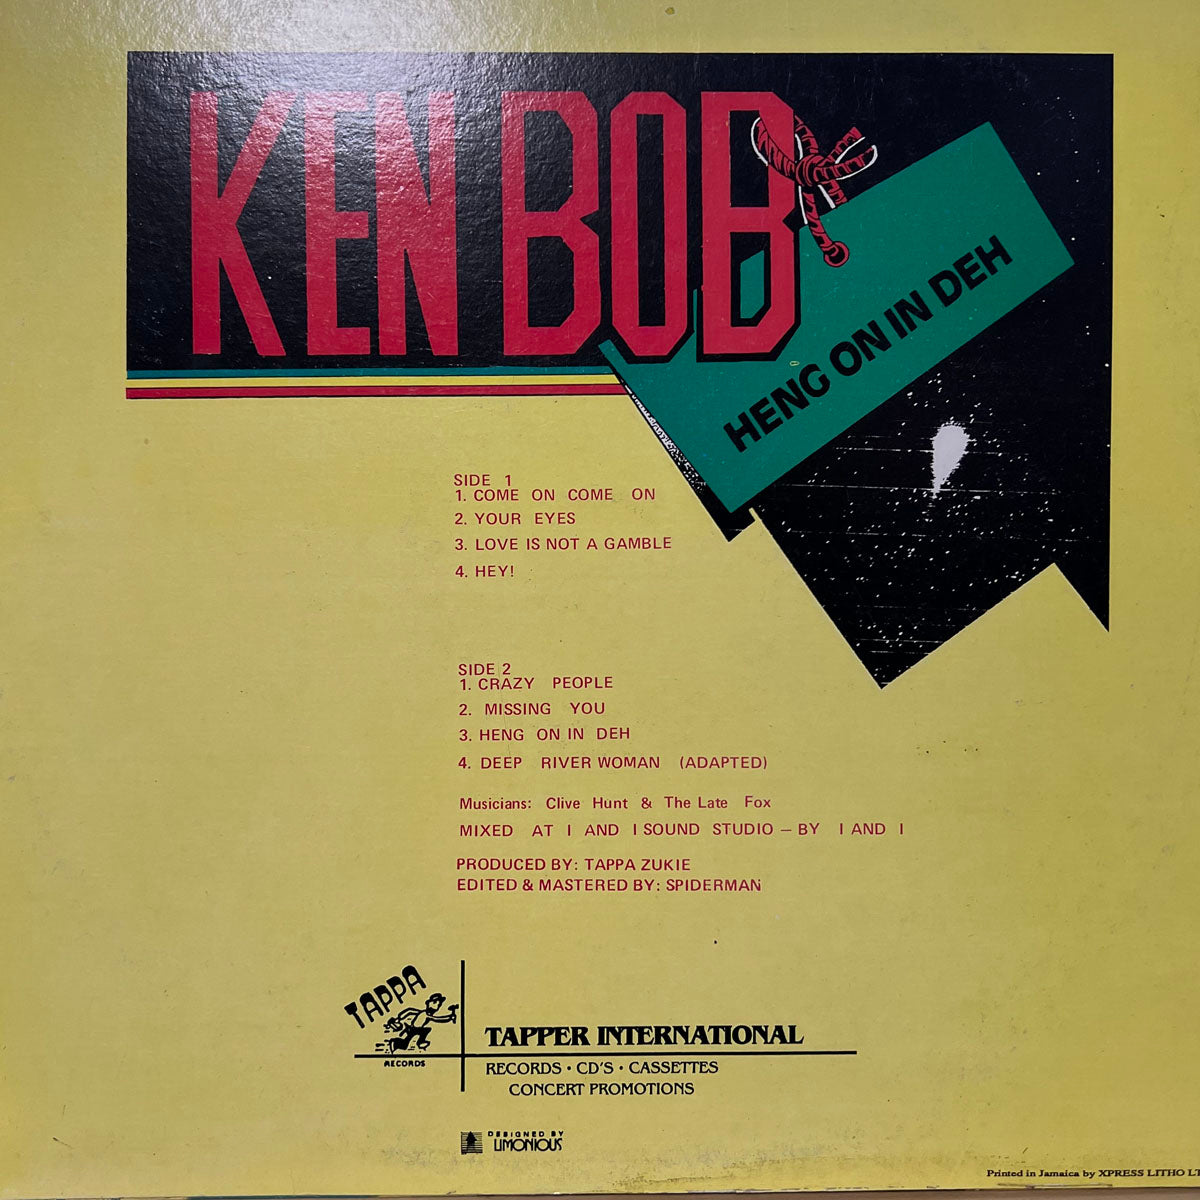 KEN BOB / HENG ON IN DEH